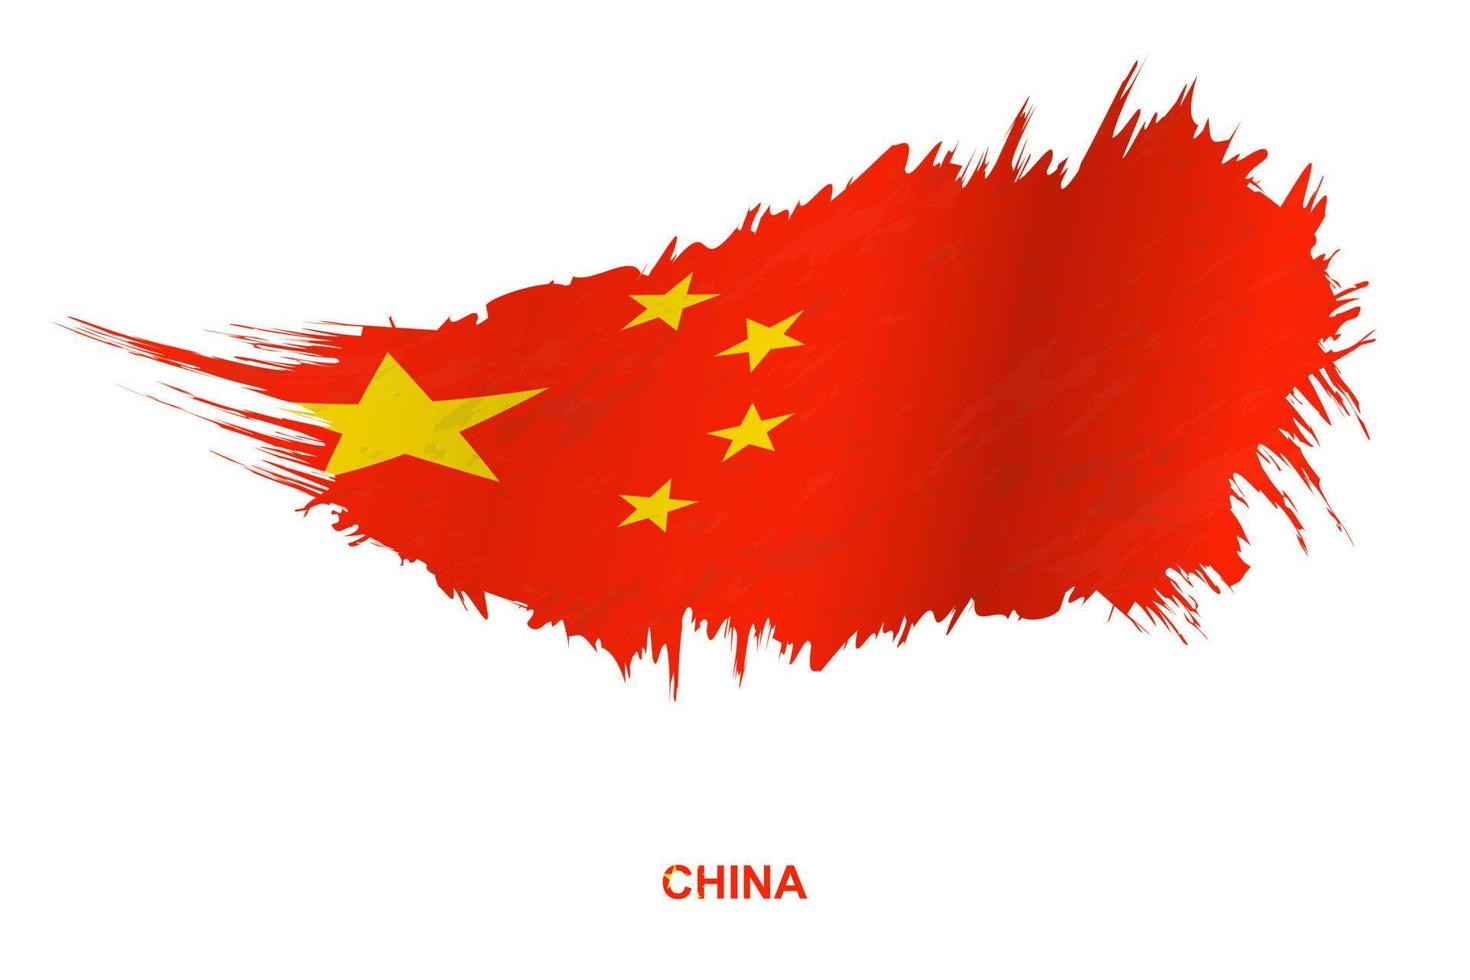 bandeira da china em estilo grunge com efeito acenando. vetor